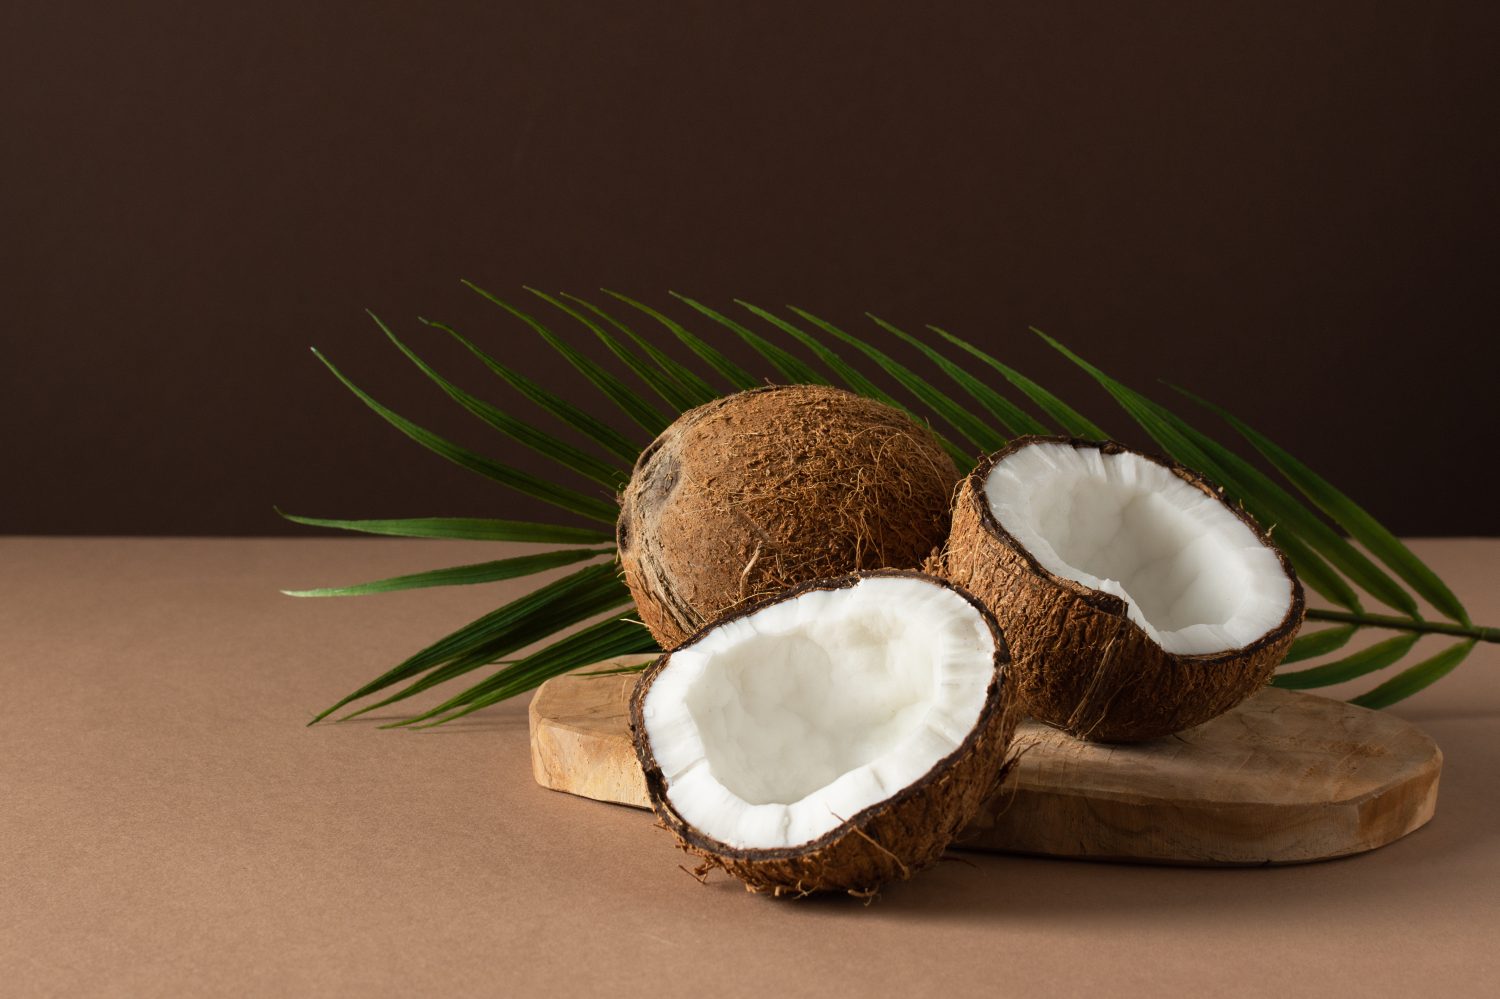 Noci di cocco con foglia di palma su sfondo marrone.  Frutta tropicale.